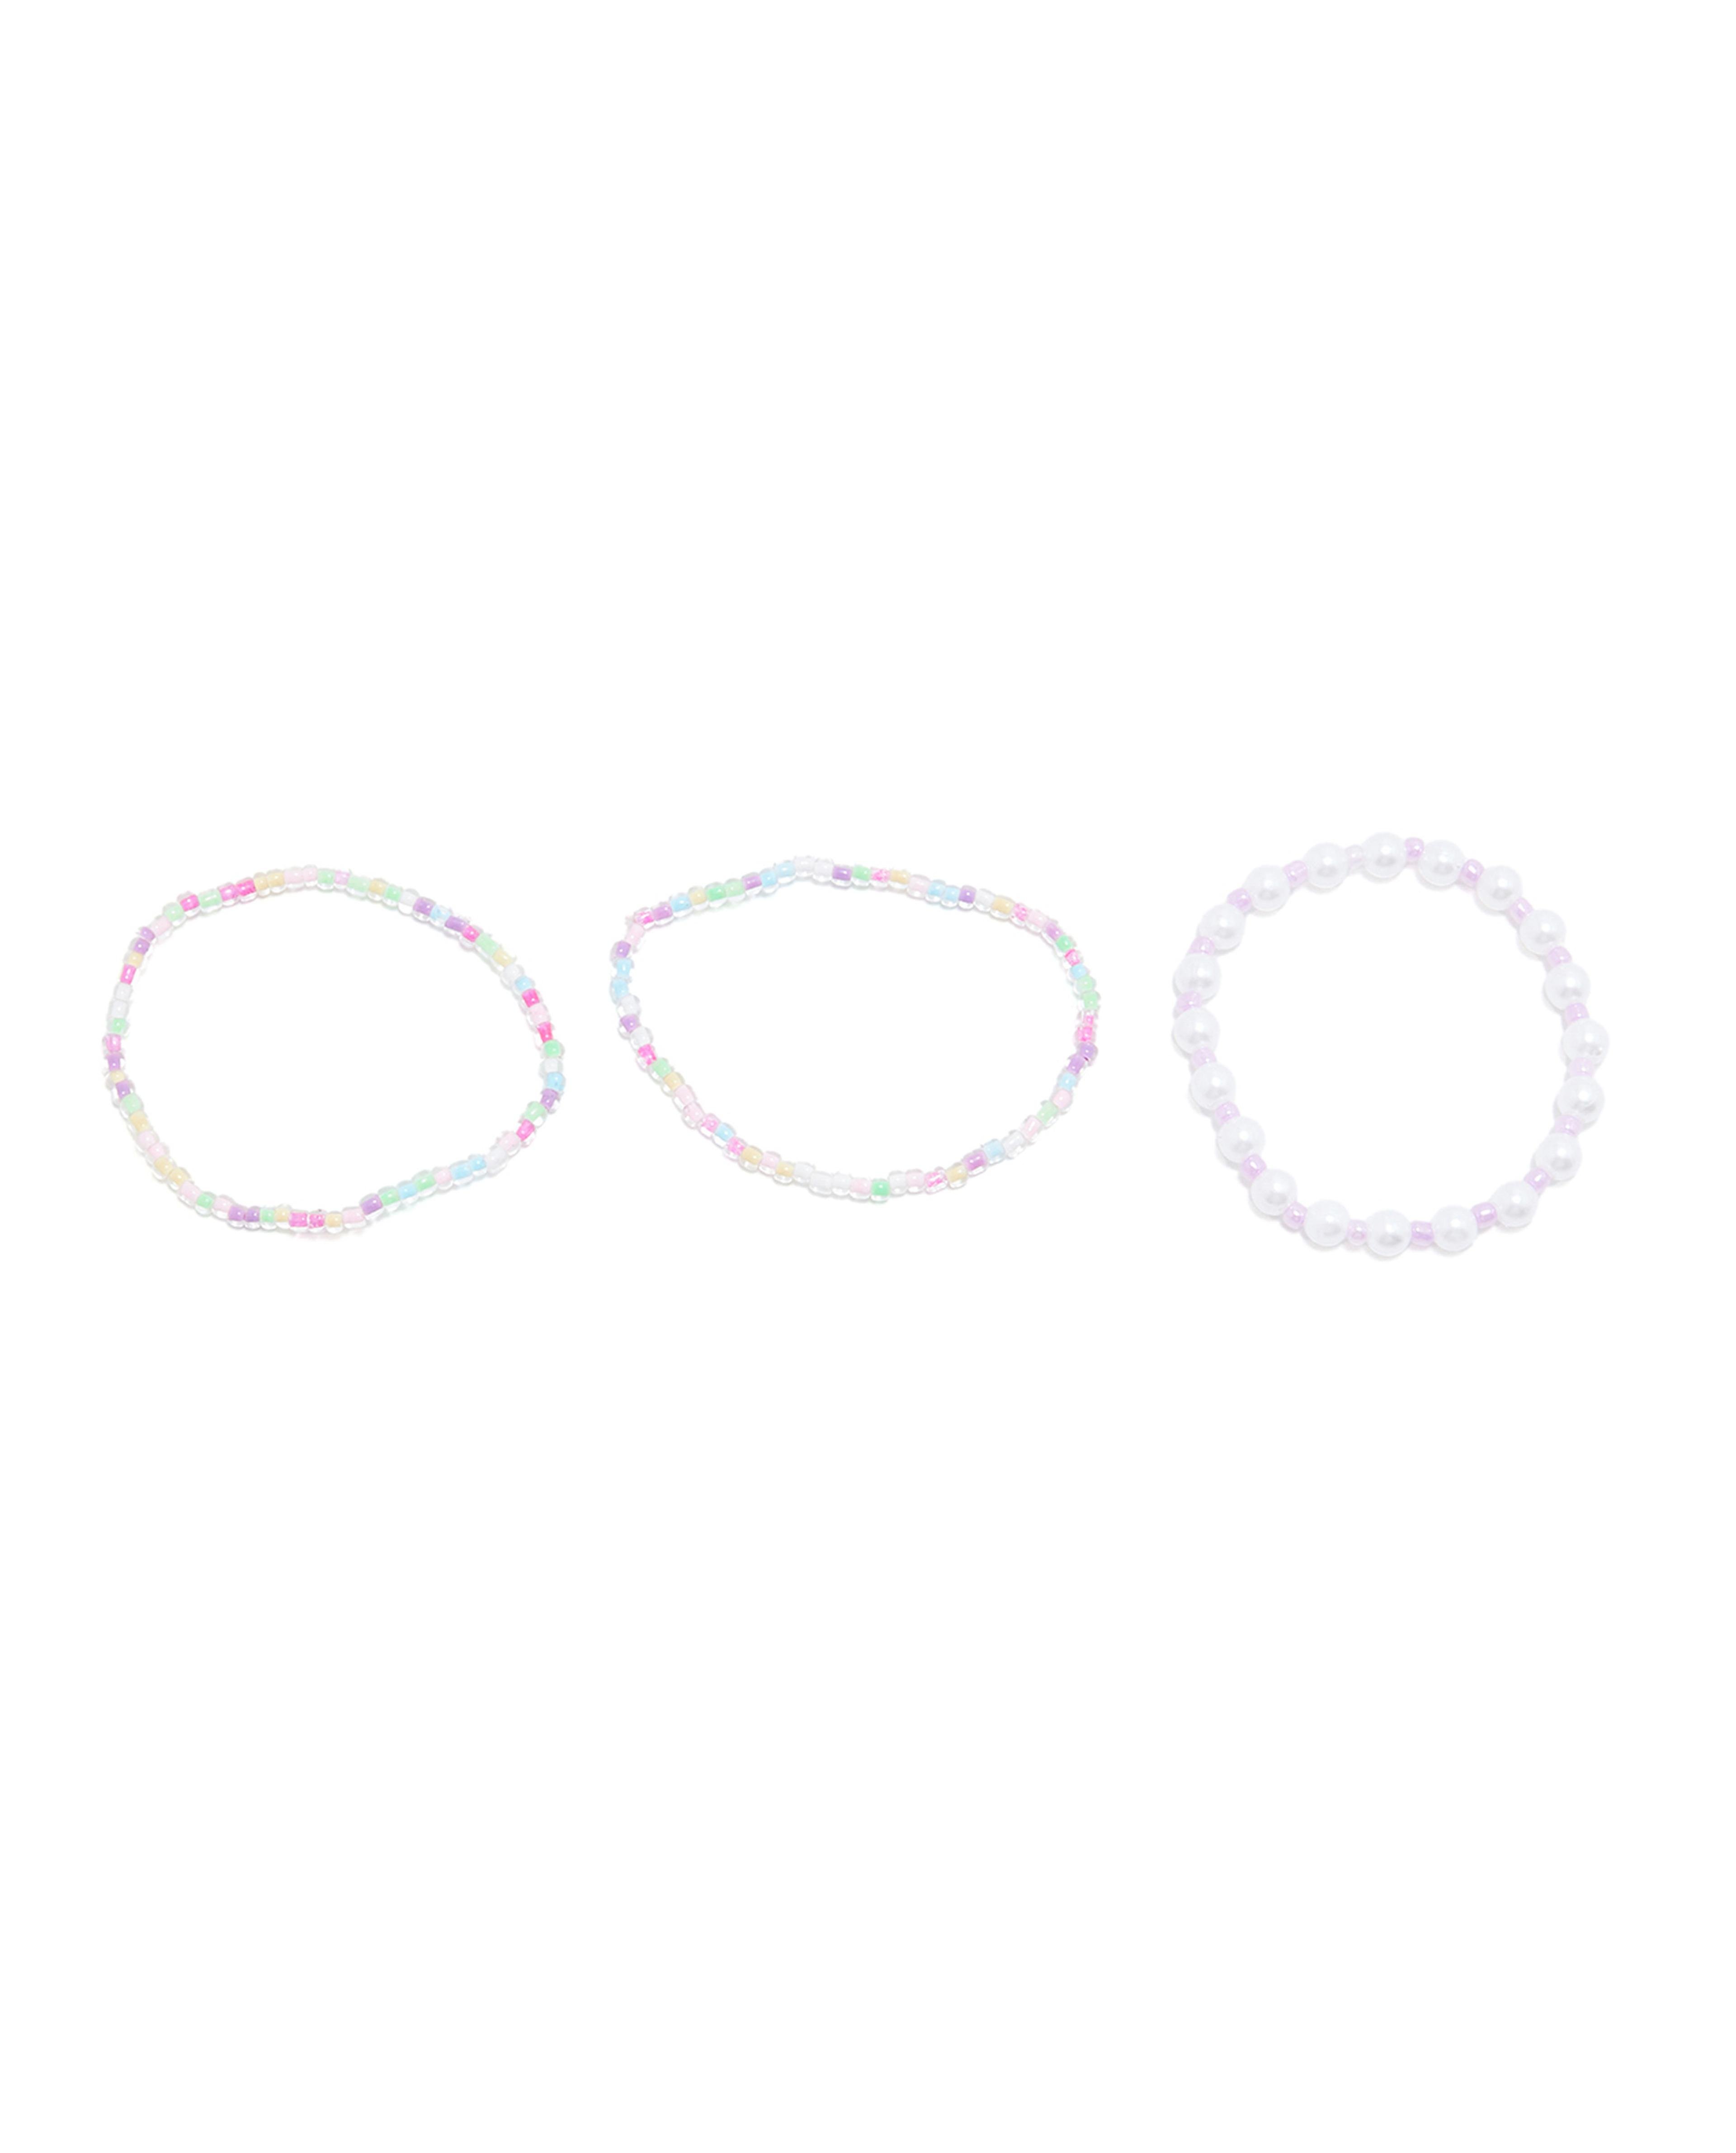 Pack of 5 Beaded Bracelets